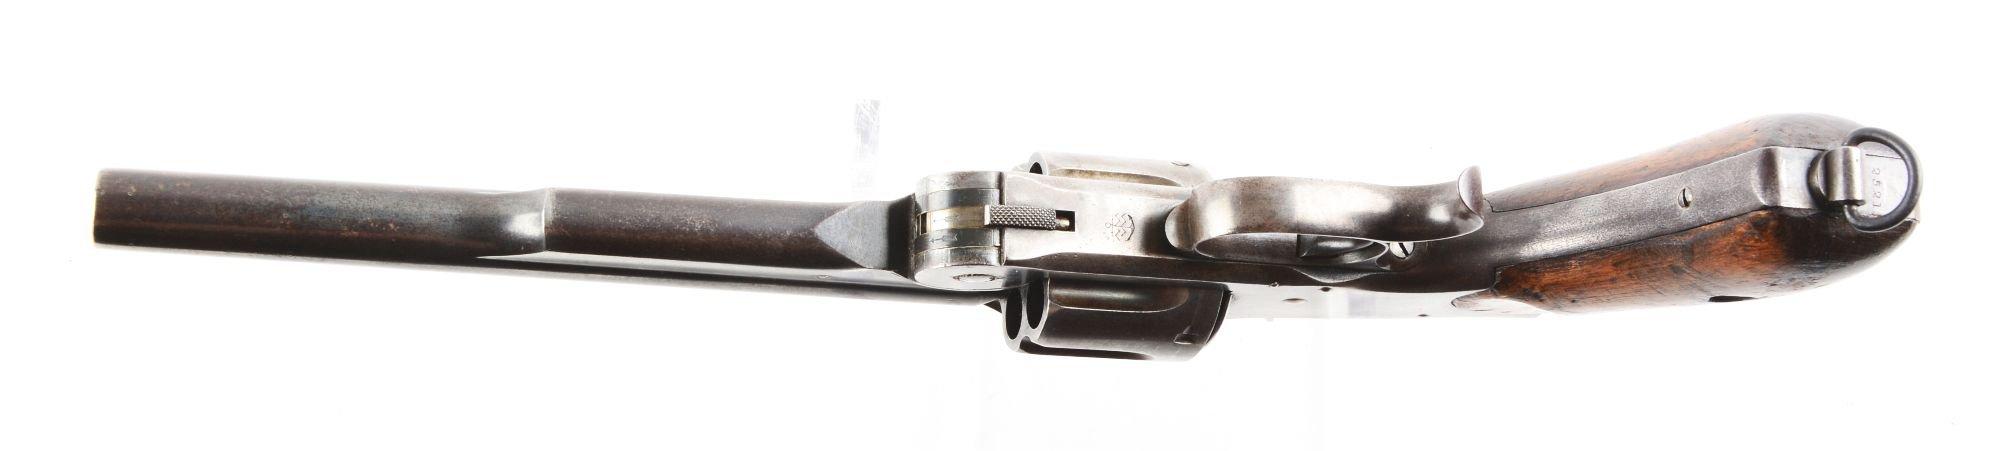 (A) S&W No. 3 Russian 2nd Model Revolver.